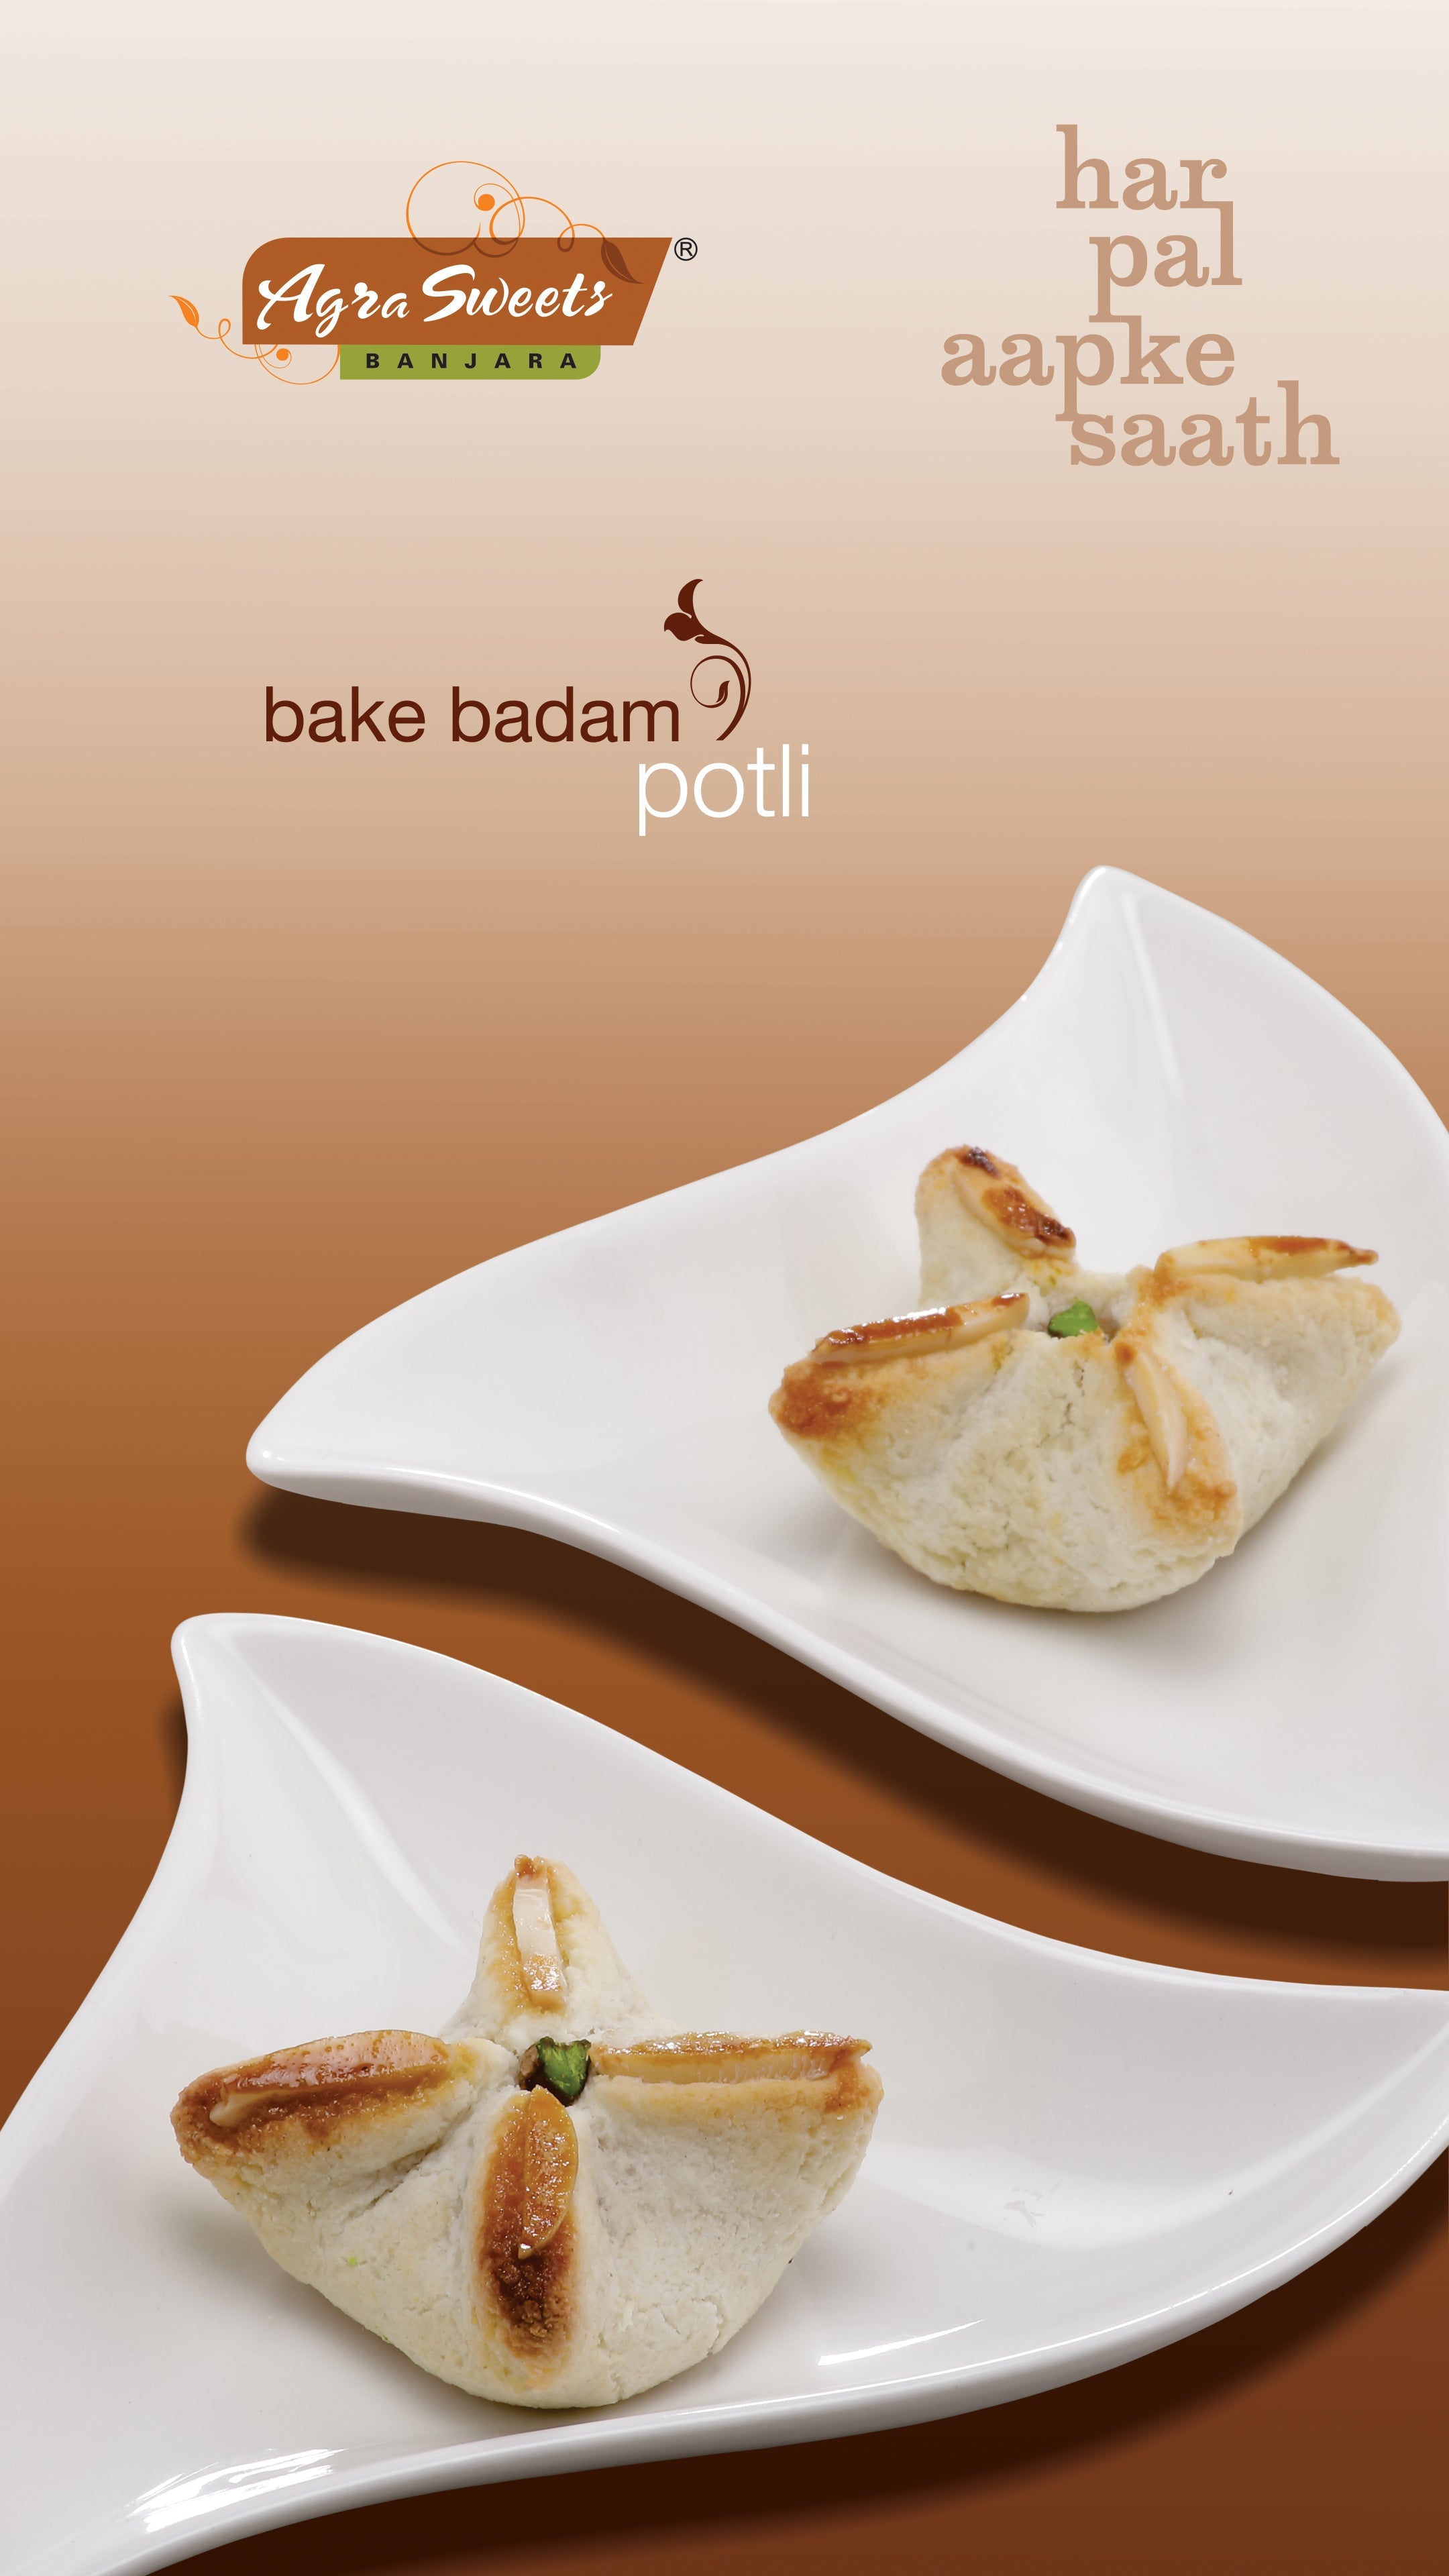 Bake Badam Potli